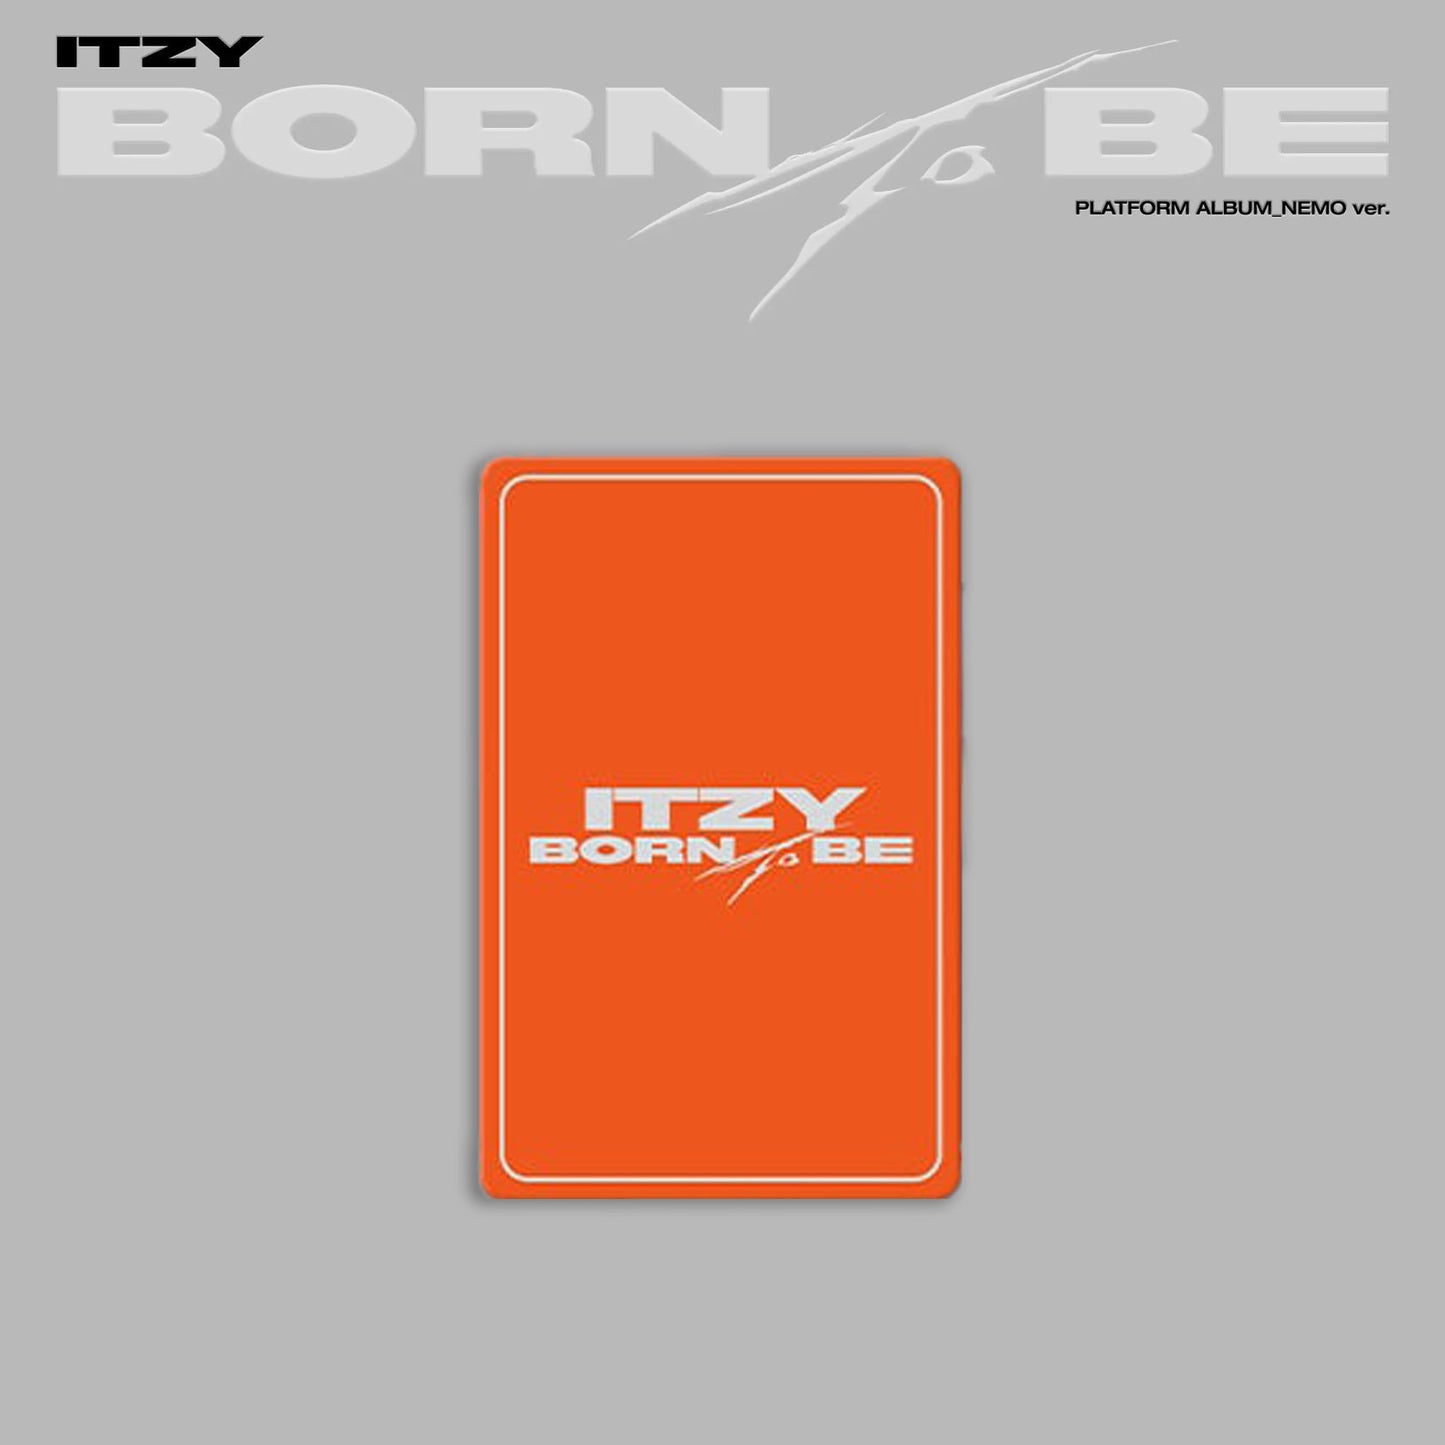 ITZY ALBUM 'BORN TO BE' (NEMO) A VERSION COVER